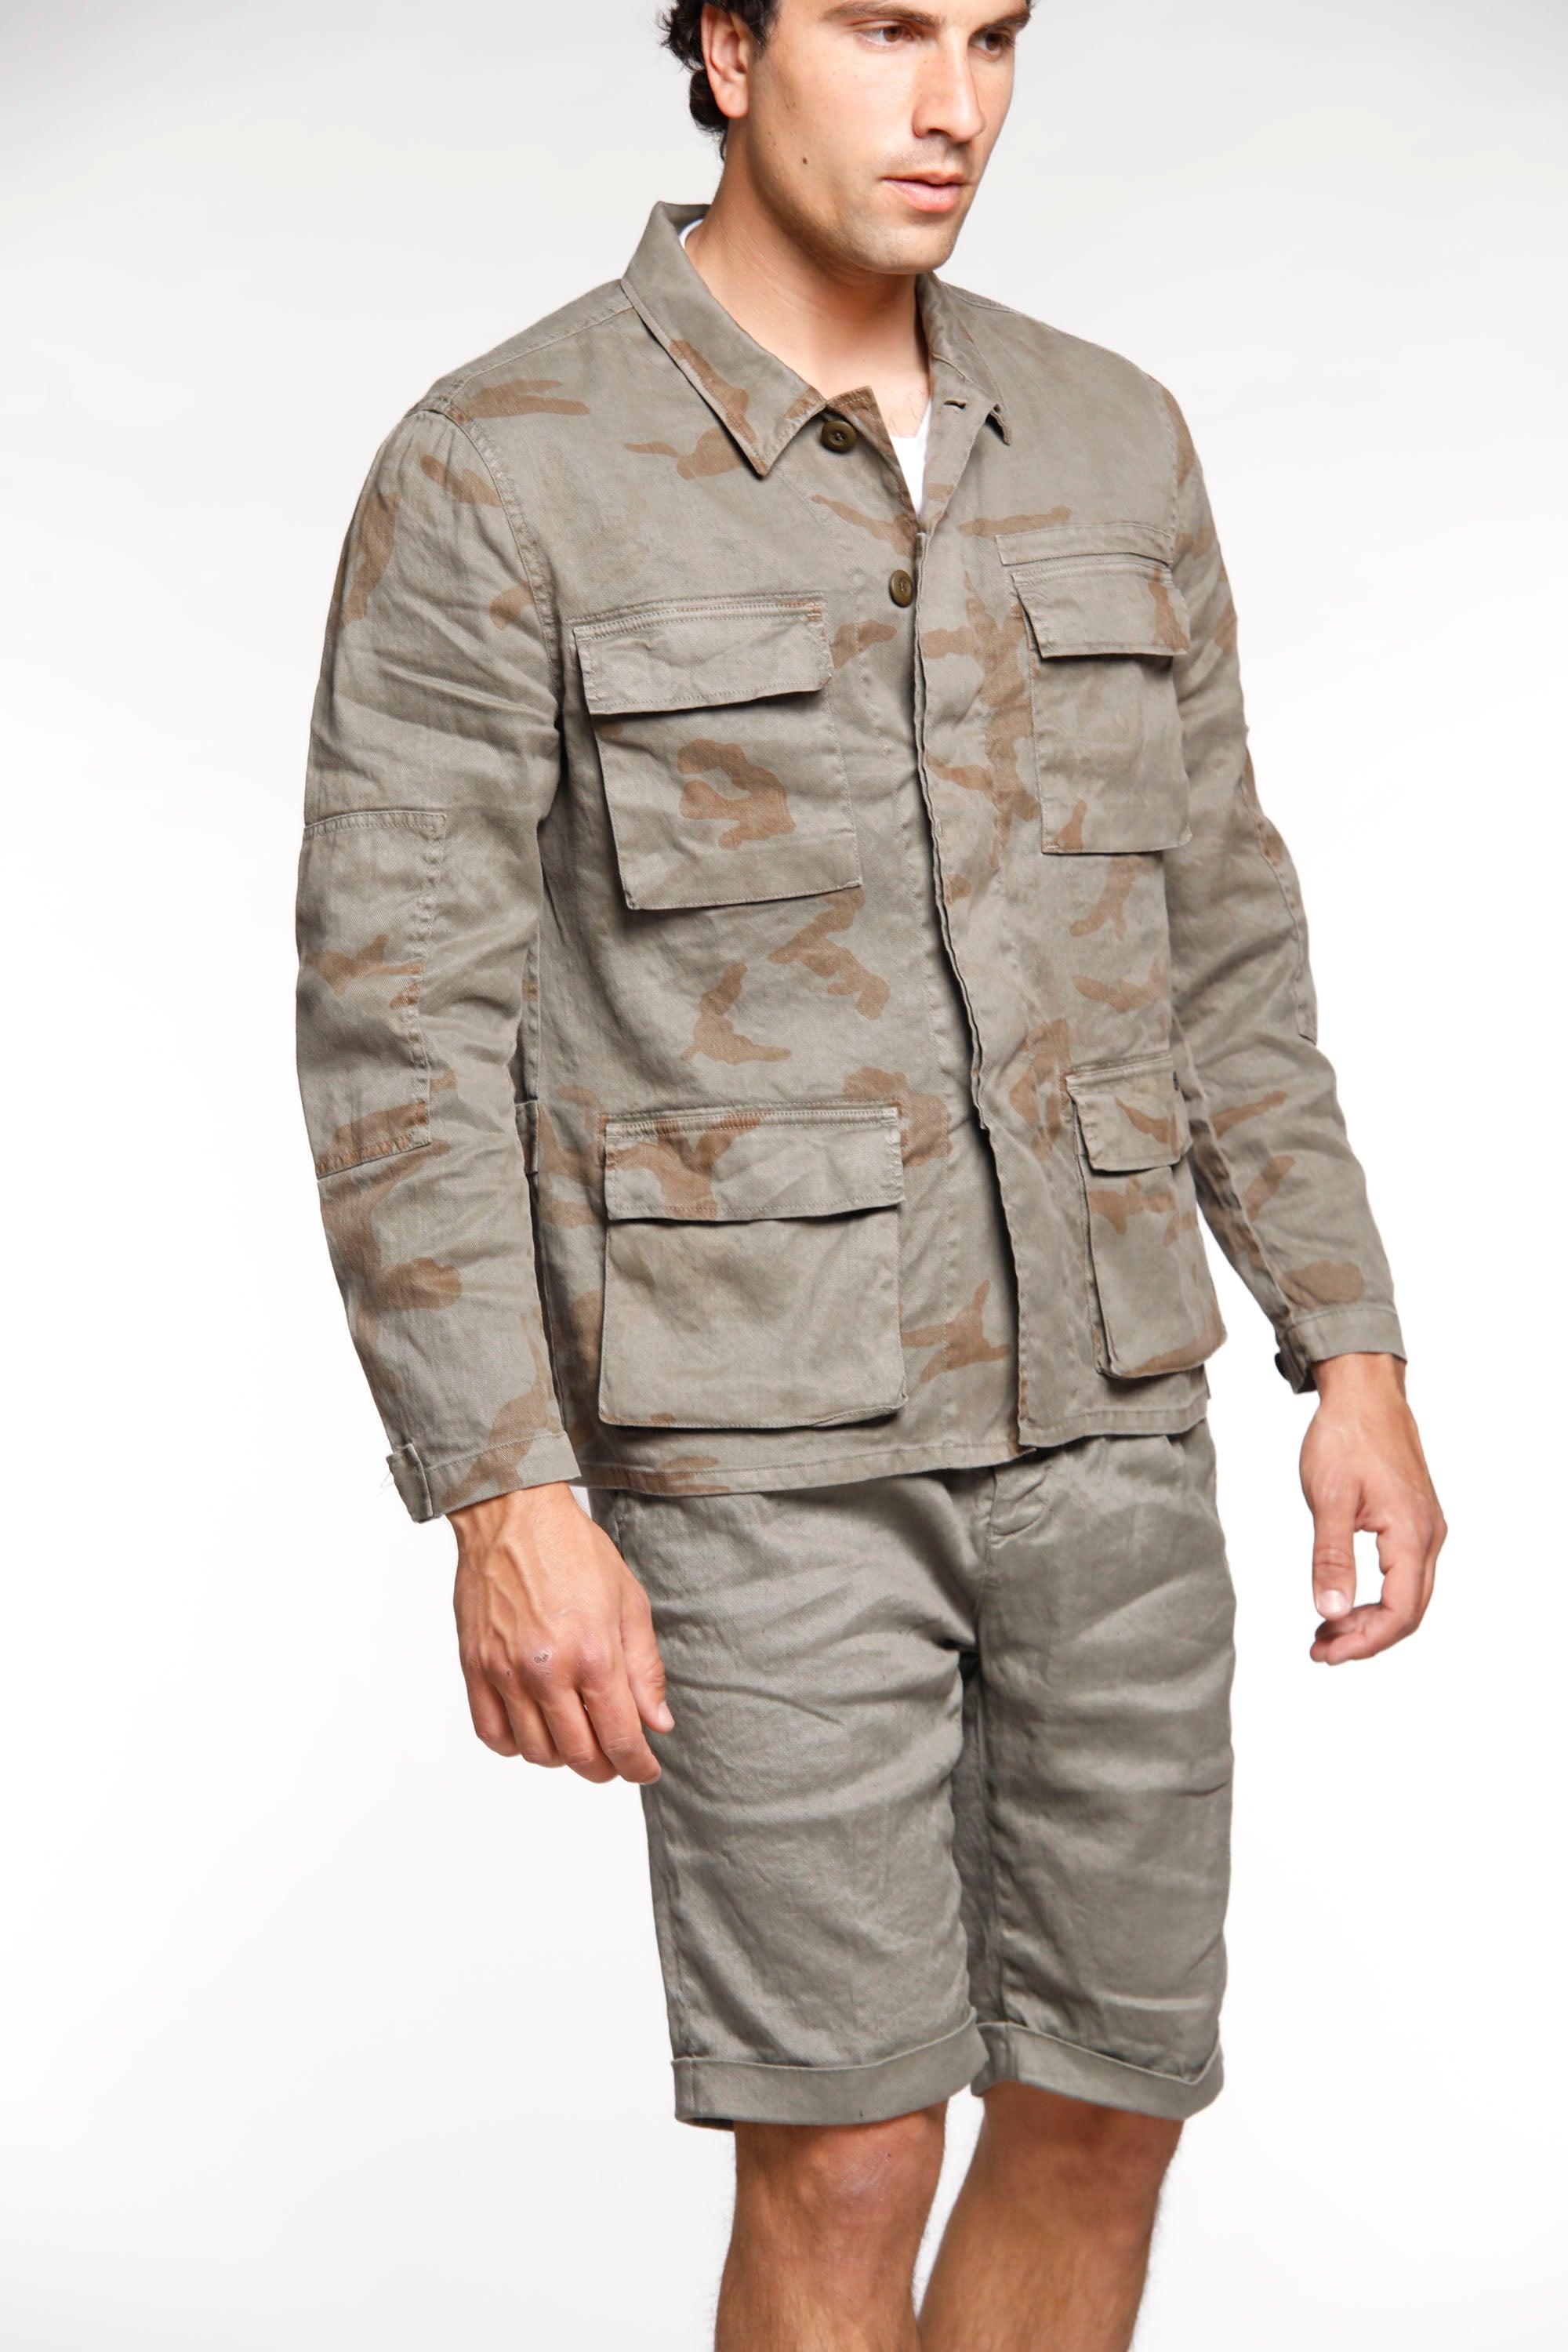 Flyshirt giacca camicia da uomo in lino camouflage con palme - Mason's